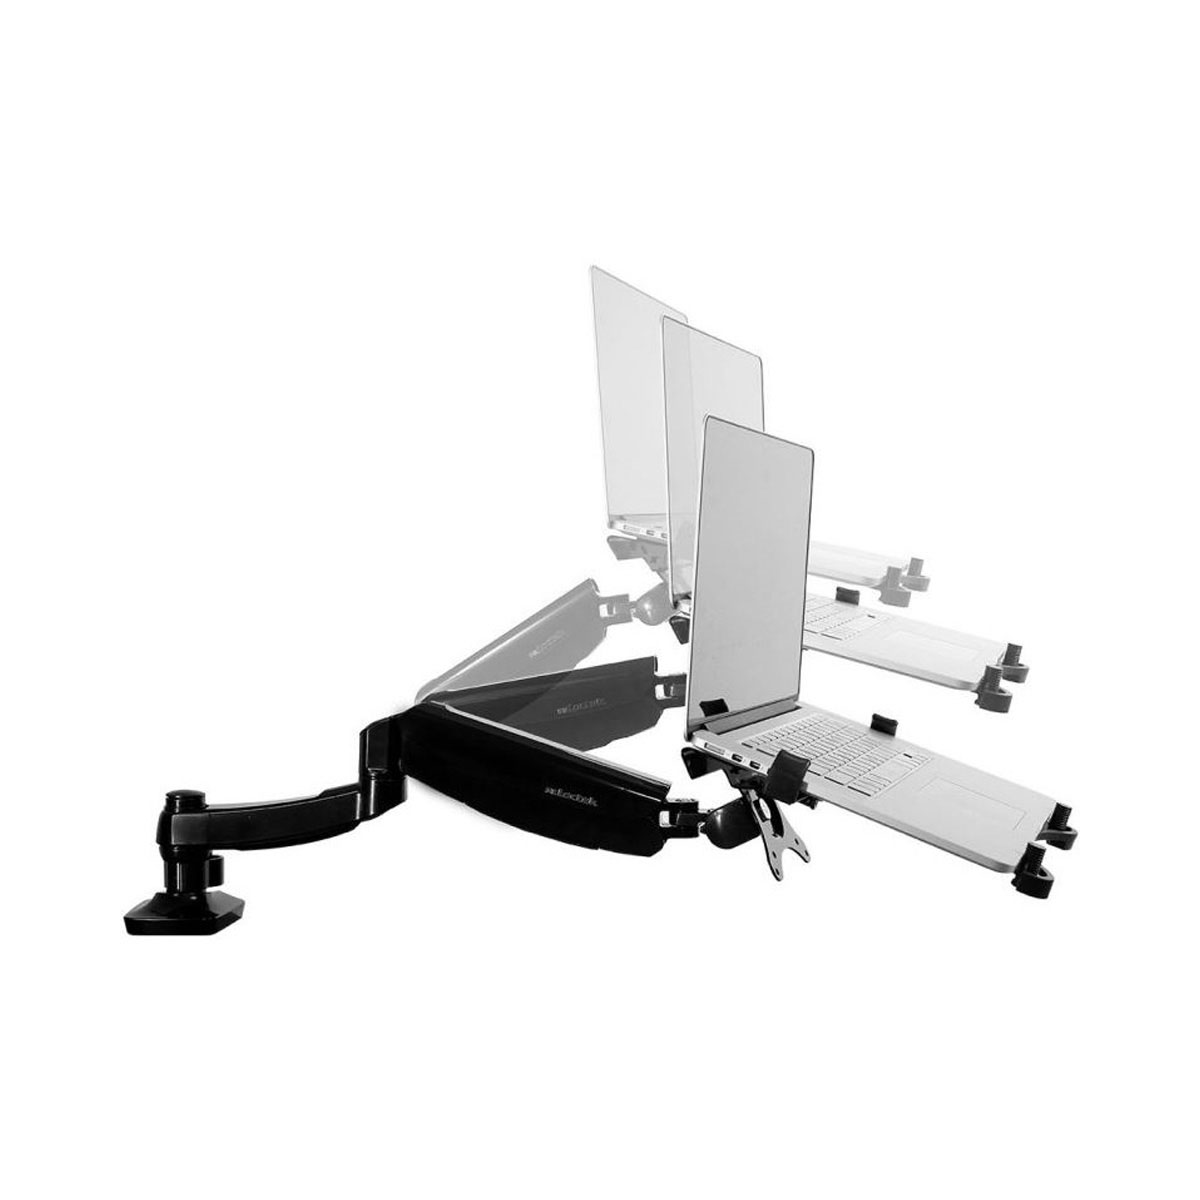 Loctek - Laptop Desk Mount, Swivel Spring Arm - Special Order Only - ETA 4-6 weeks Time